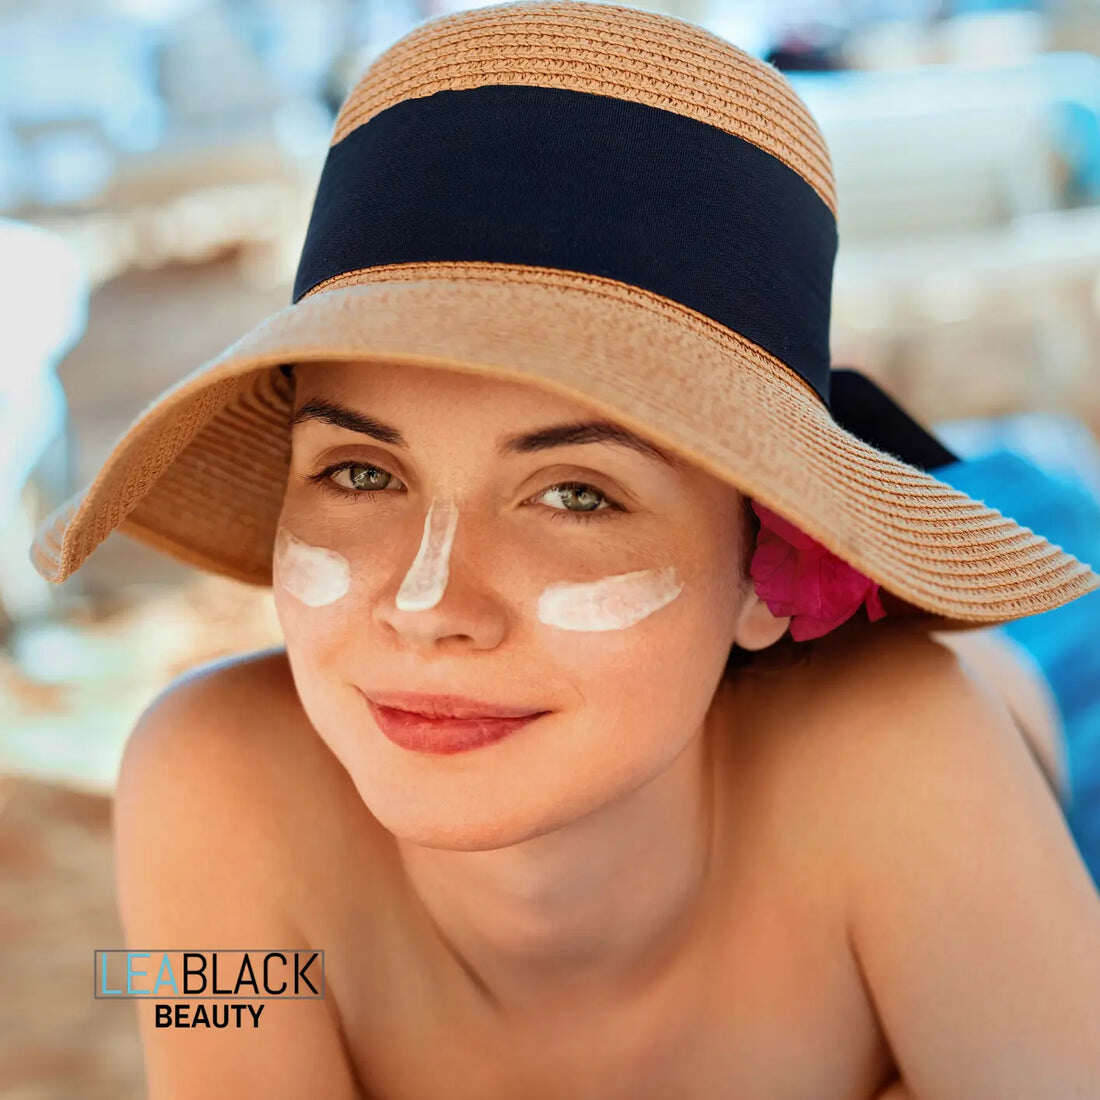 A woman wearing Lea Black Beauty® sunscreen